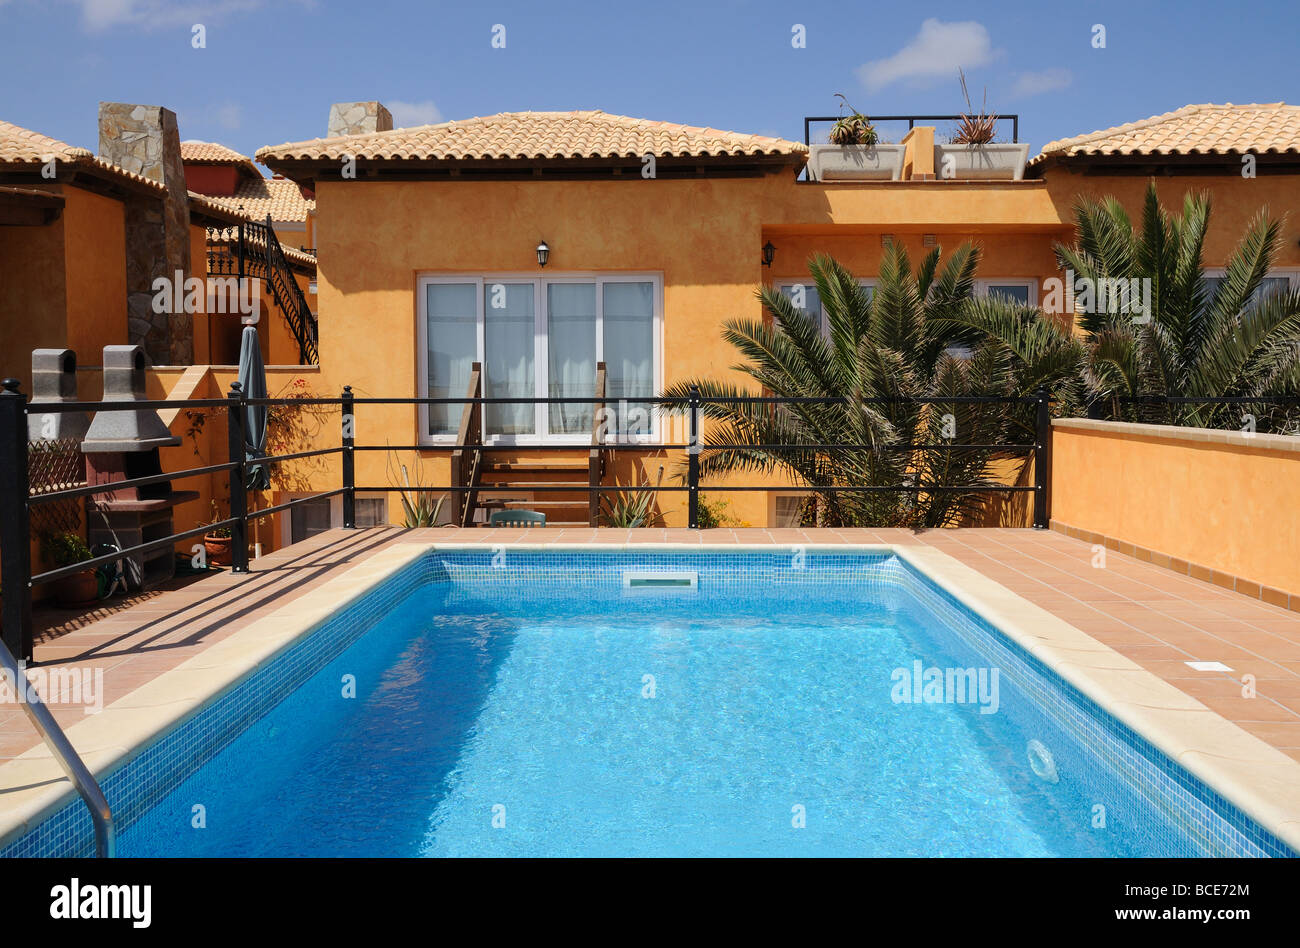 Locations de vacances avec piscine d'été, l'Espagne Banque D'Images